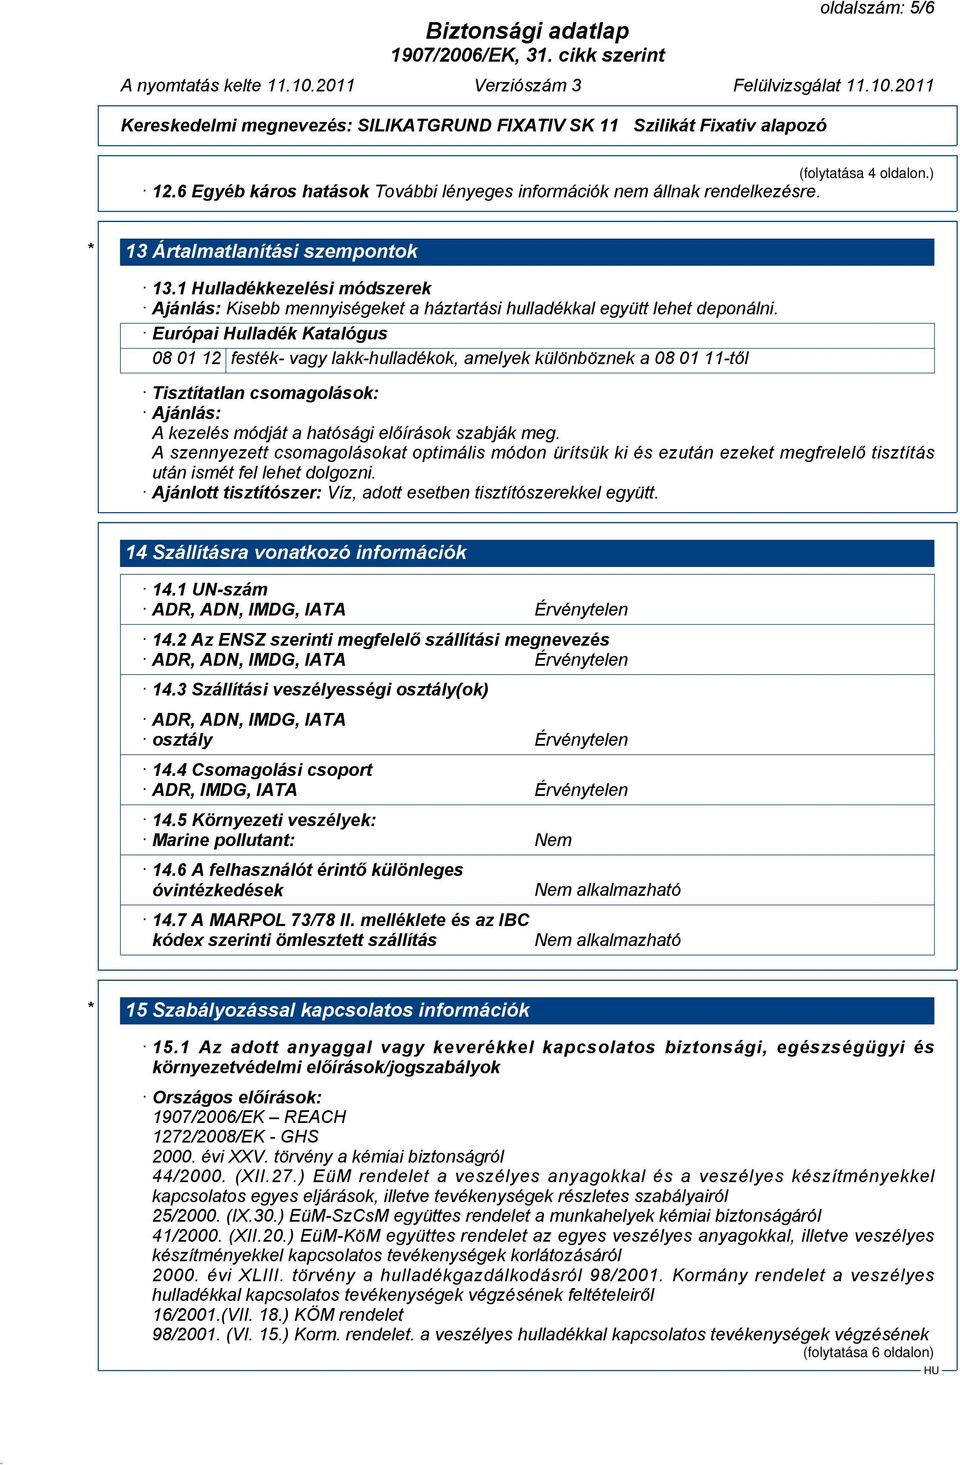 Európai Hulladék Katalógus 08 01 12 festék- vagy lakk-hulladékok, amelyek különböznek a 08 01 11-től Tisztítatlan csomagolások: Ajánlás: A kezelés módját a hatósági előírások szabják meg.